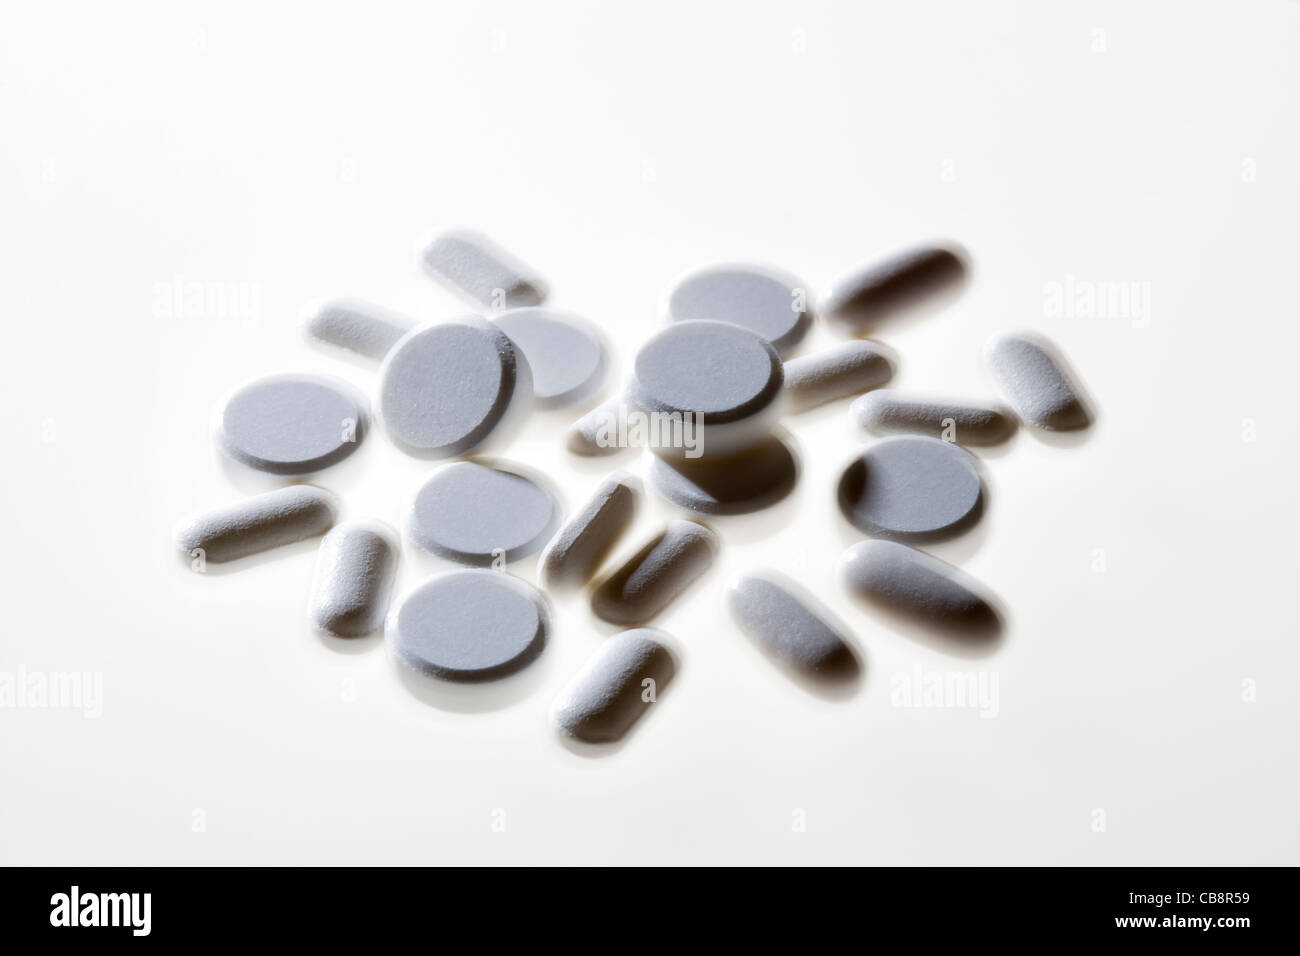 Variety of white pills. Stock Photo